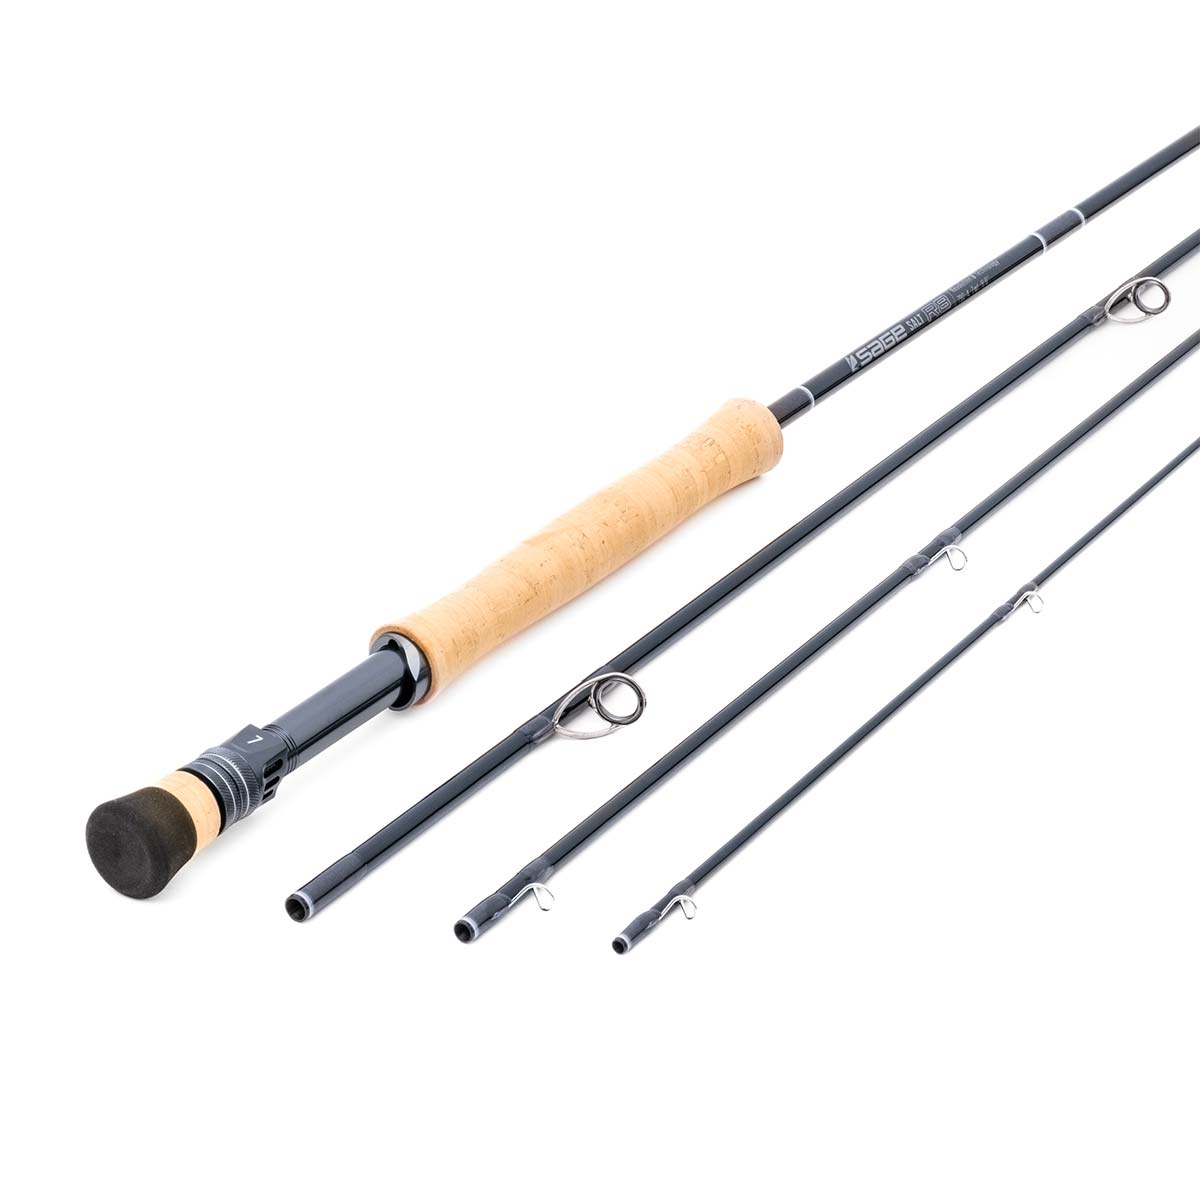 Daiwa SALTIGA C 85-8 Spinning Fishing Rod